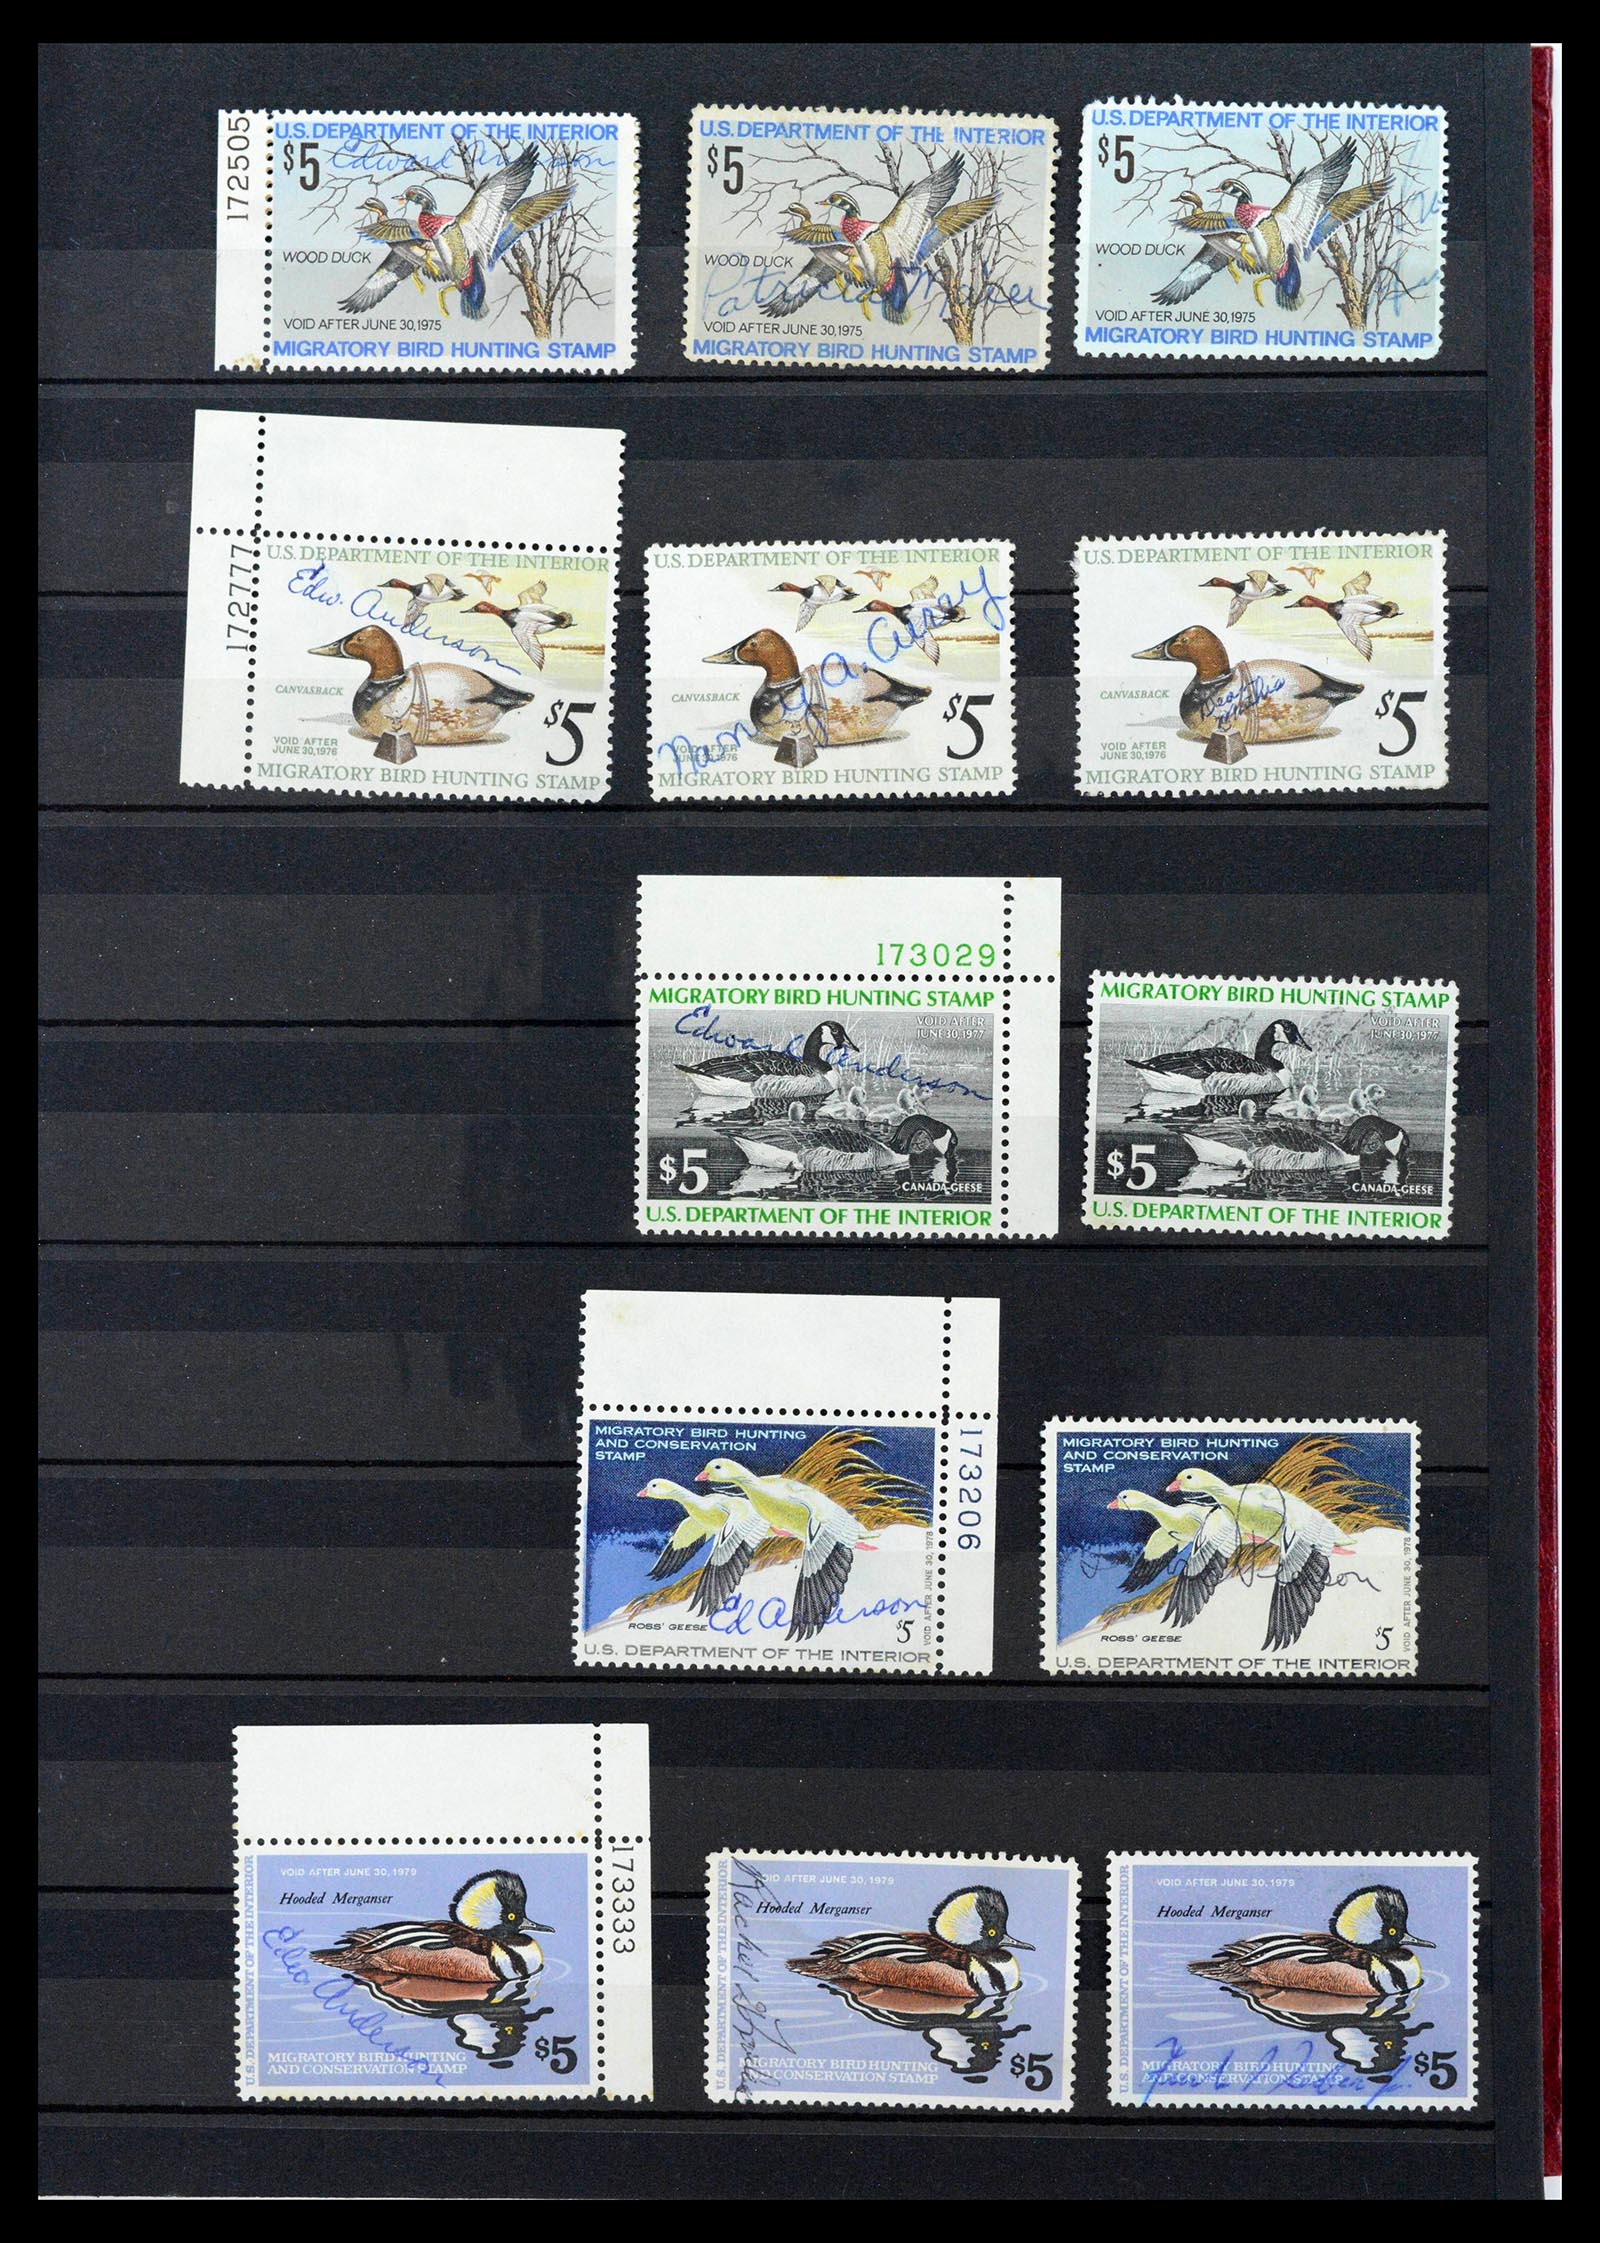 39426 0009 - Postzegelverzameling 39426 USA duckstamps 1934-2007.